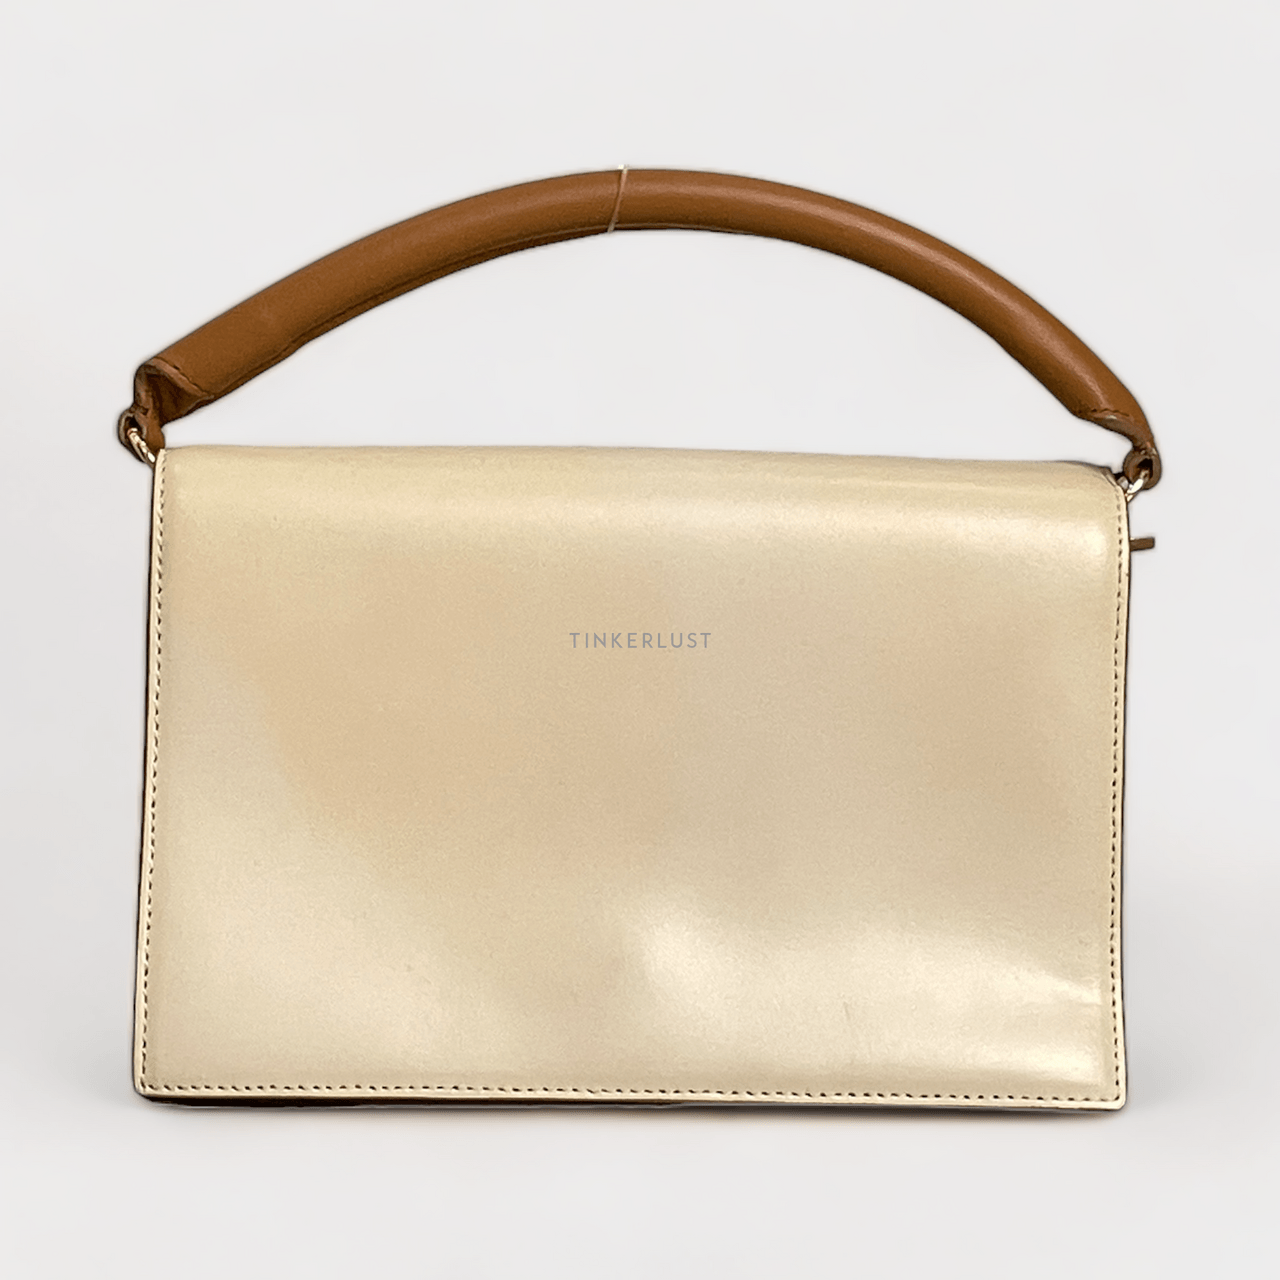 Diane Von Furstenberg Soiree Cream Leather GHW Shoulder Bag